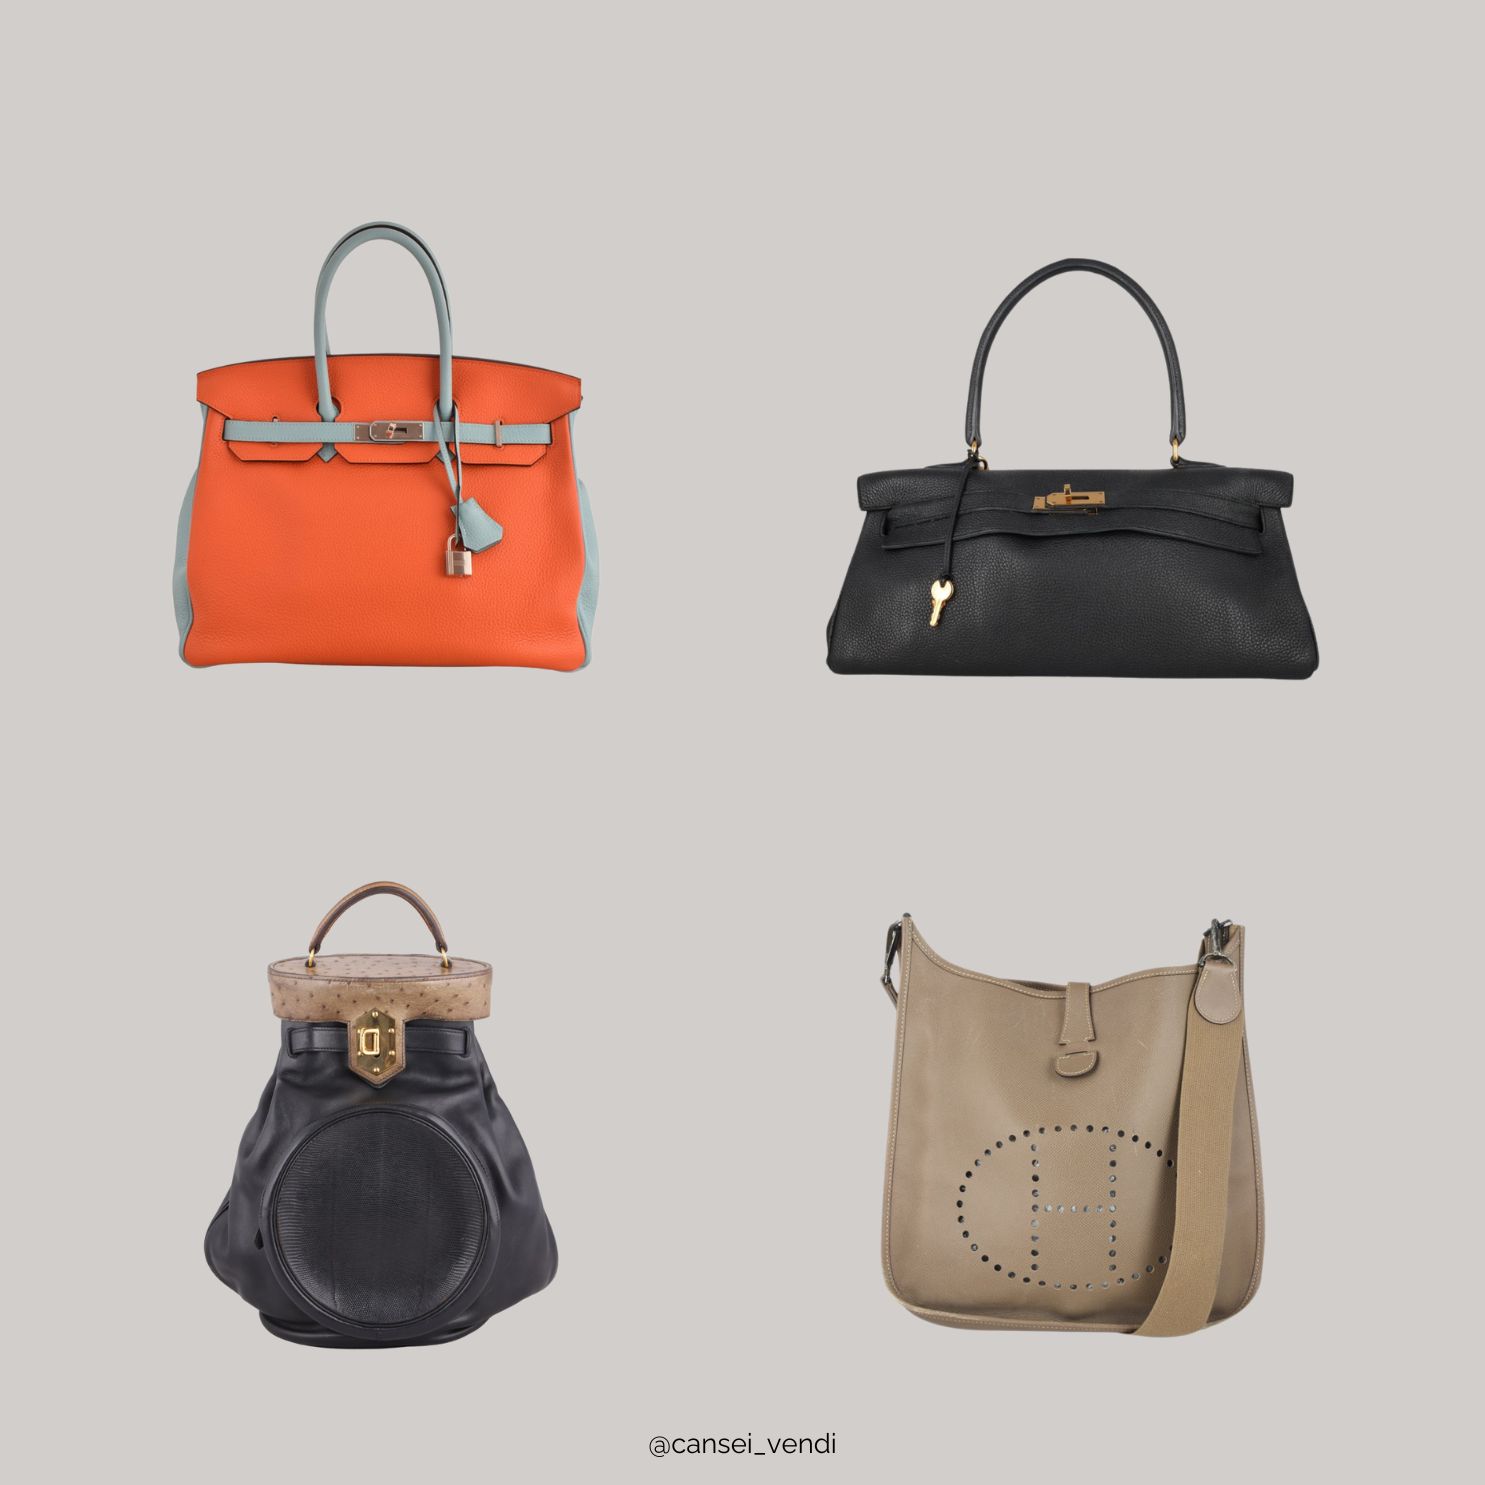 As 10 marcas de bolsas femininas mais procuradas - Cansei Vendi